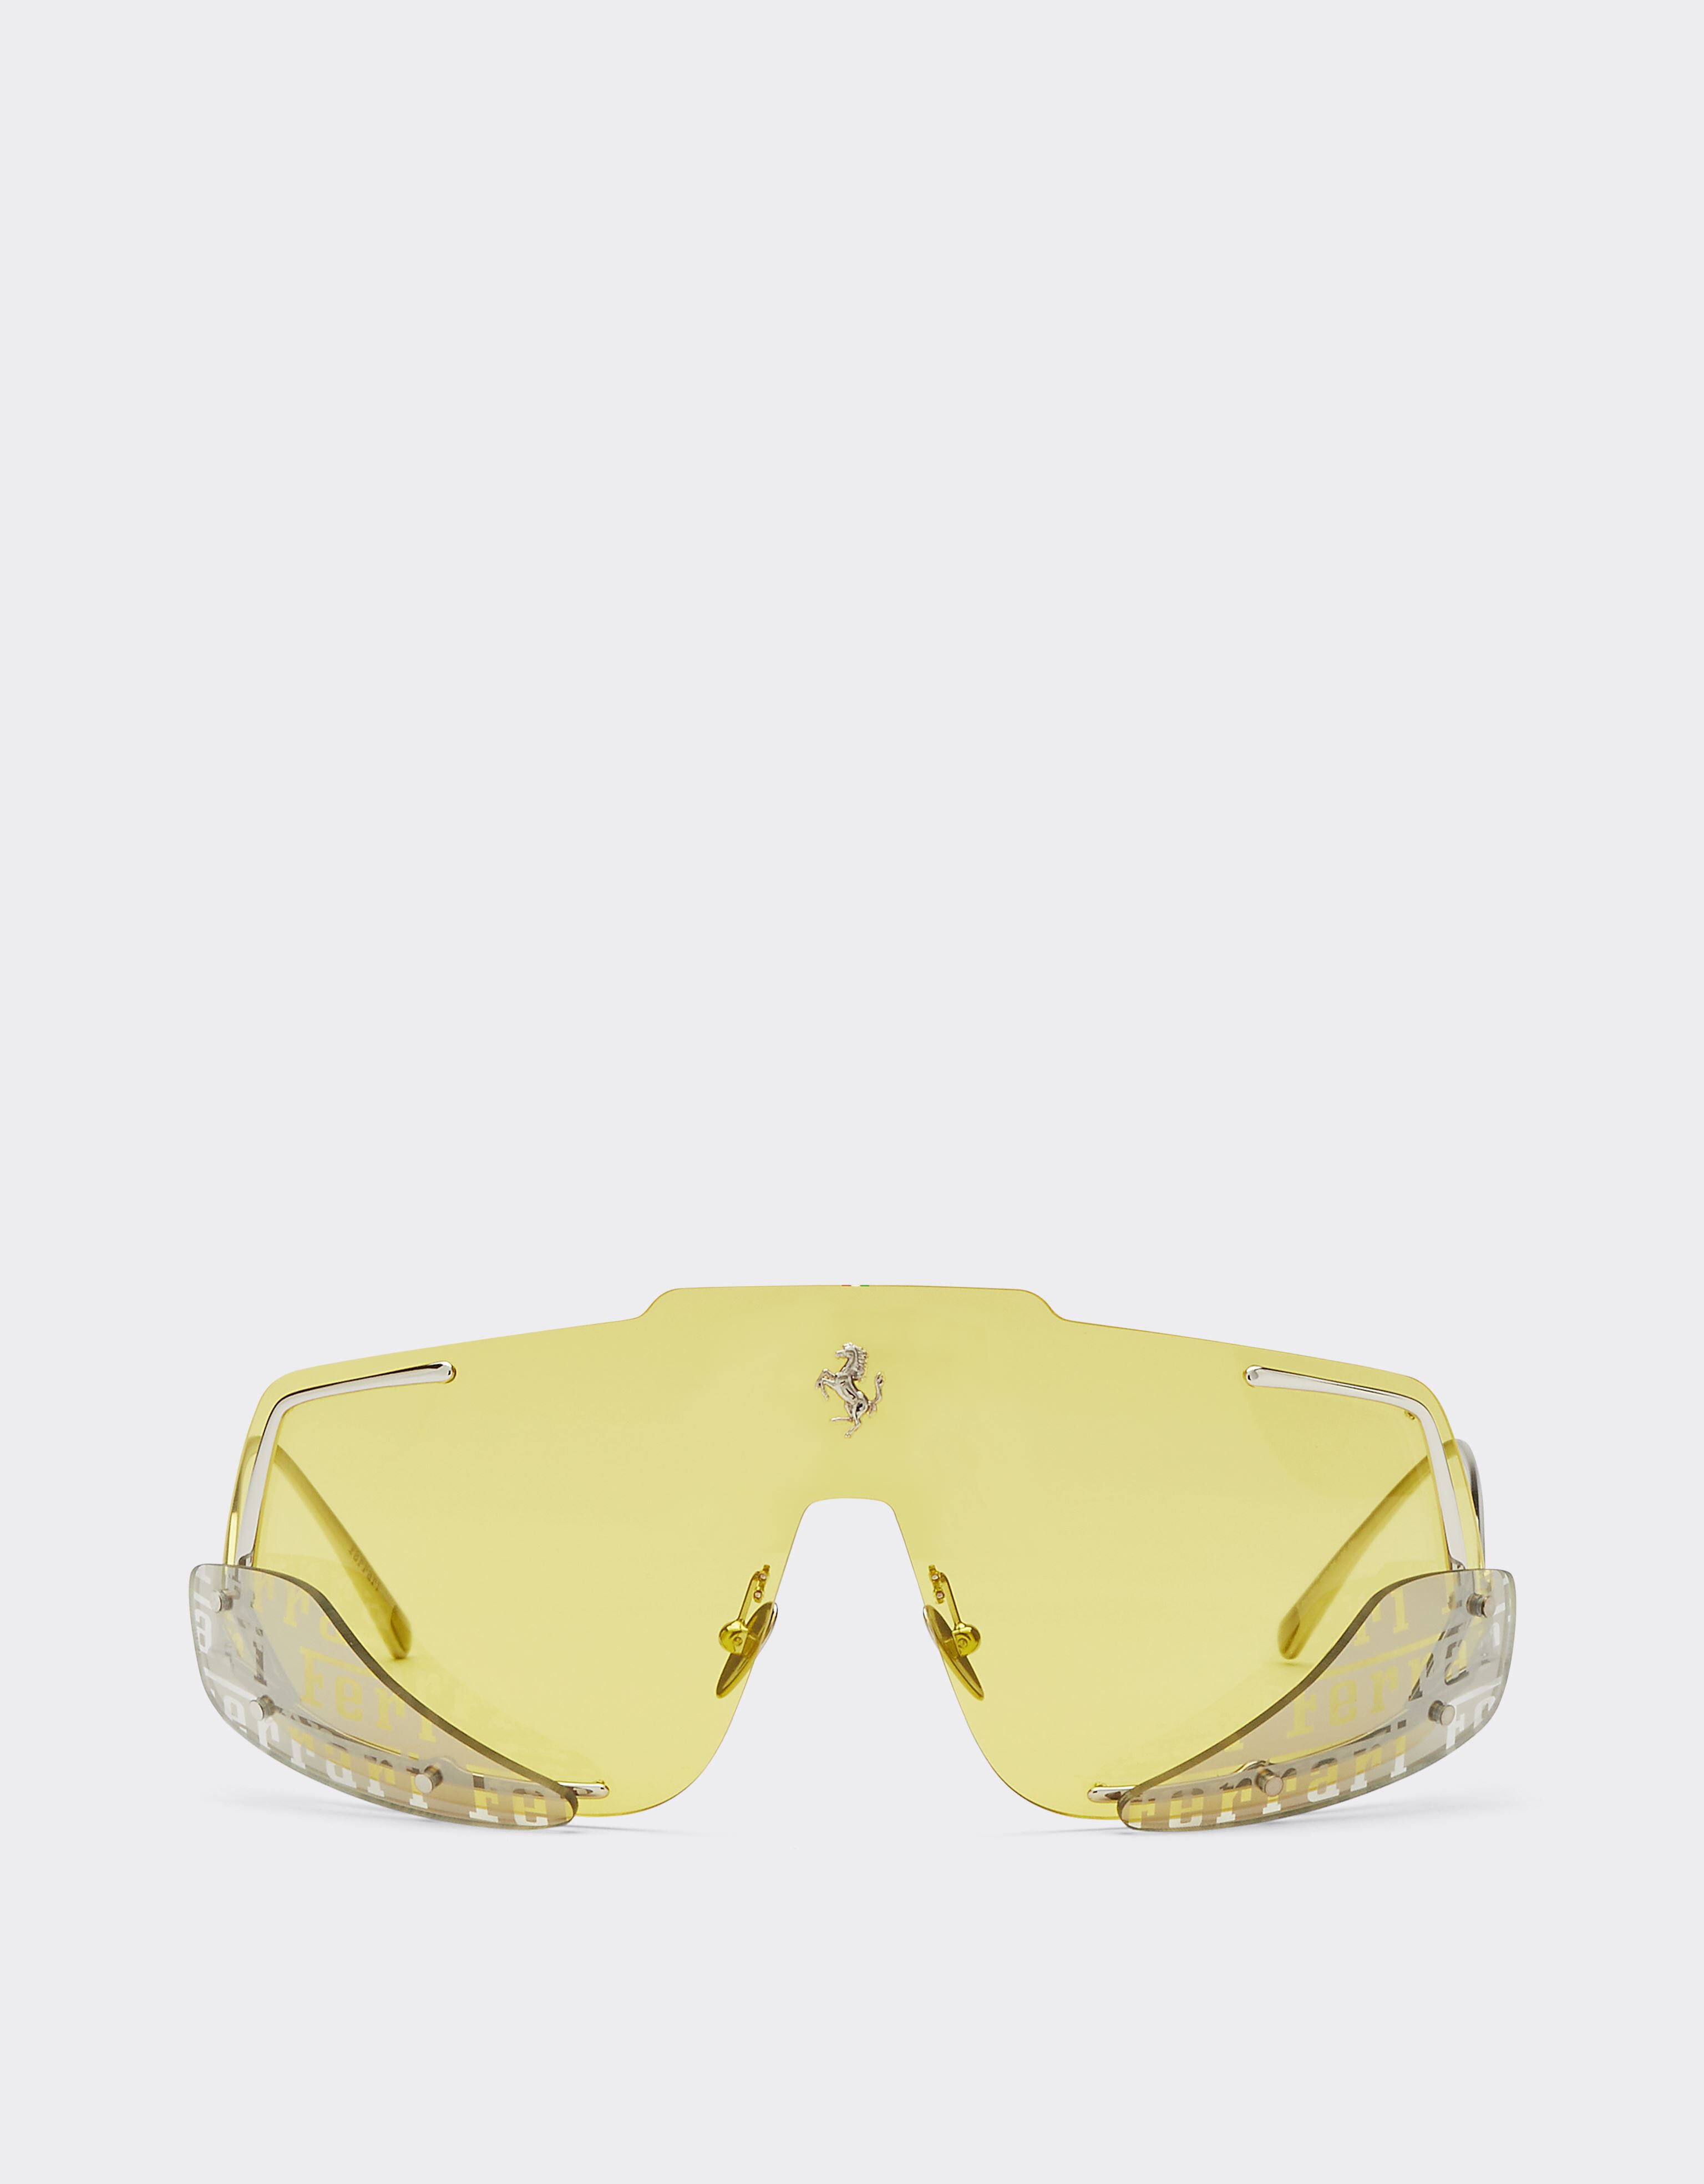 Ferrari Gafas de sol Ferrari con cristales amarillos Plata F0406f